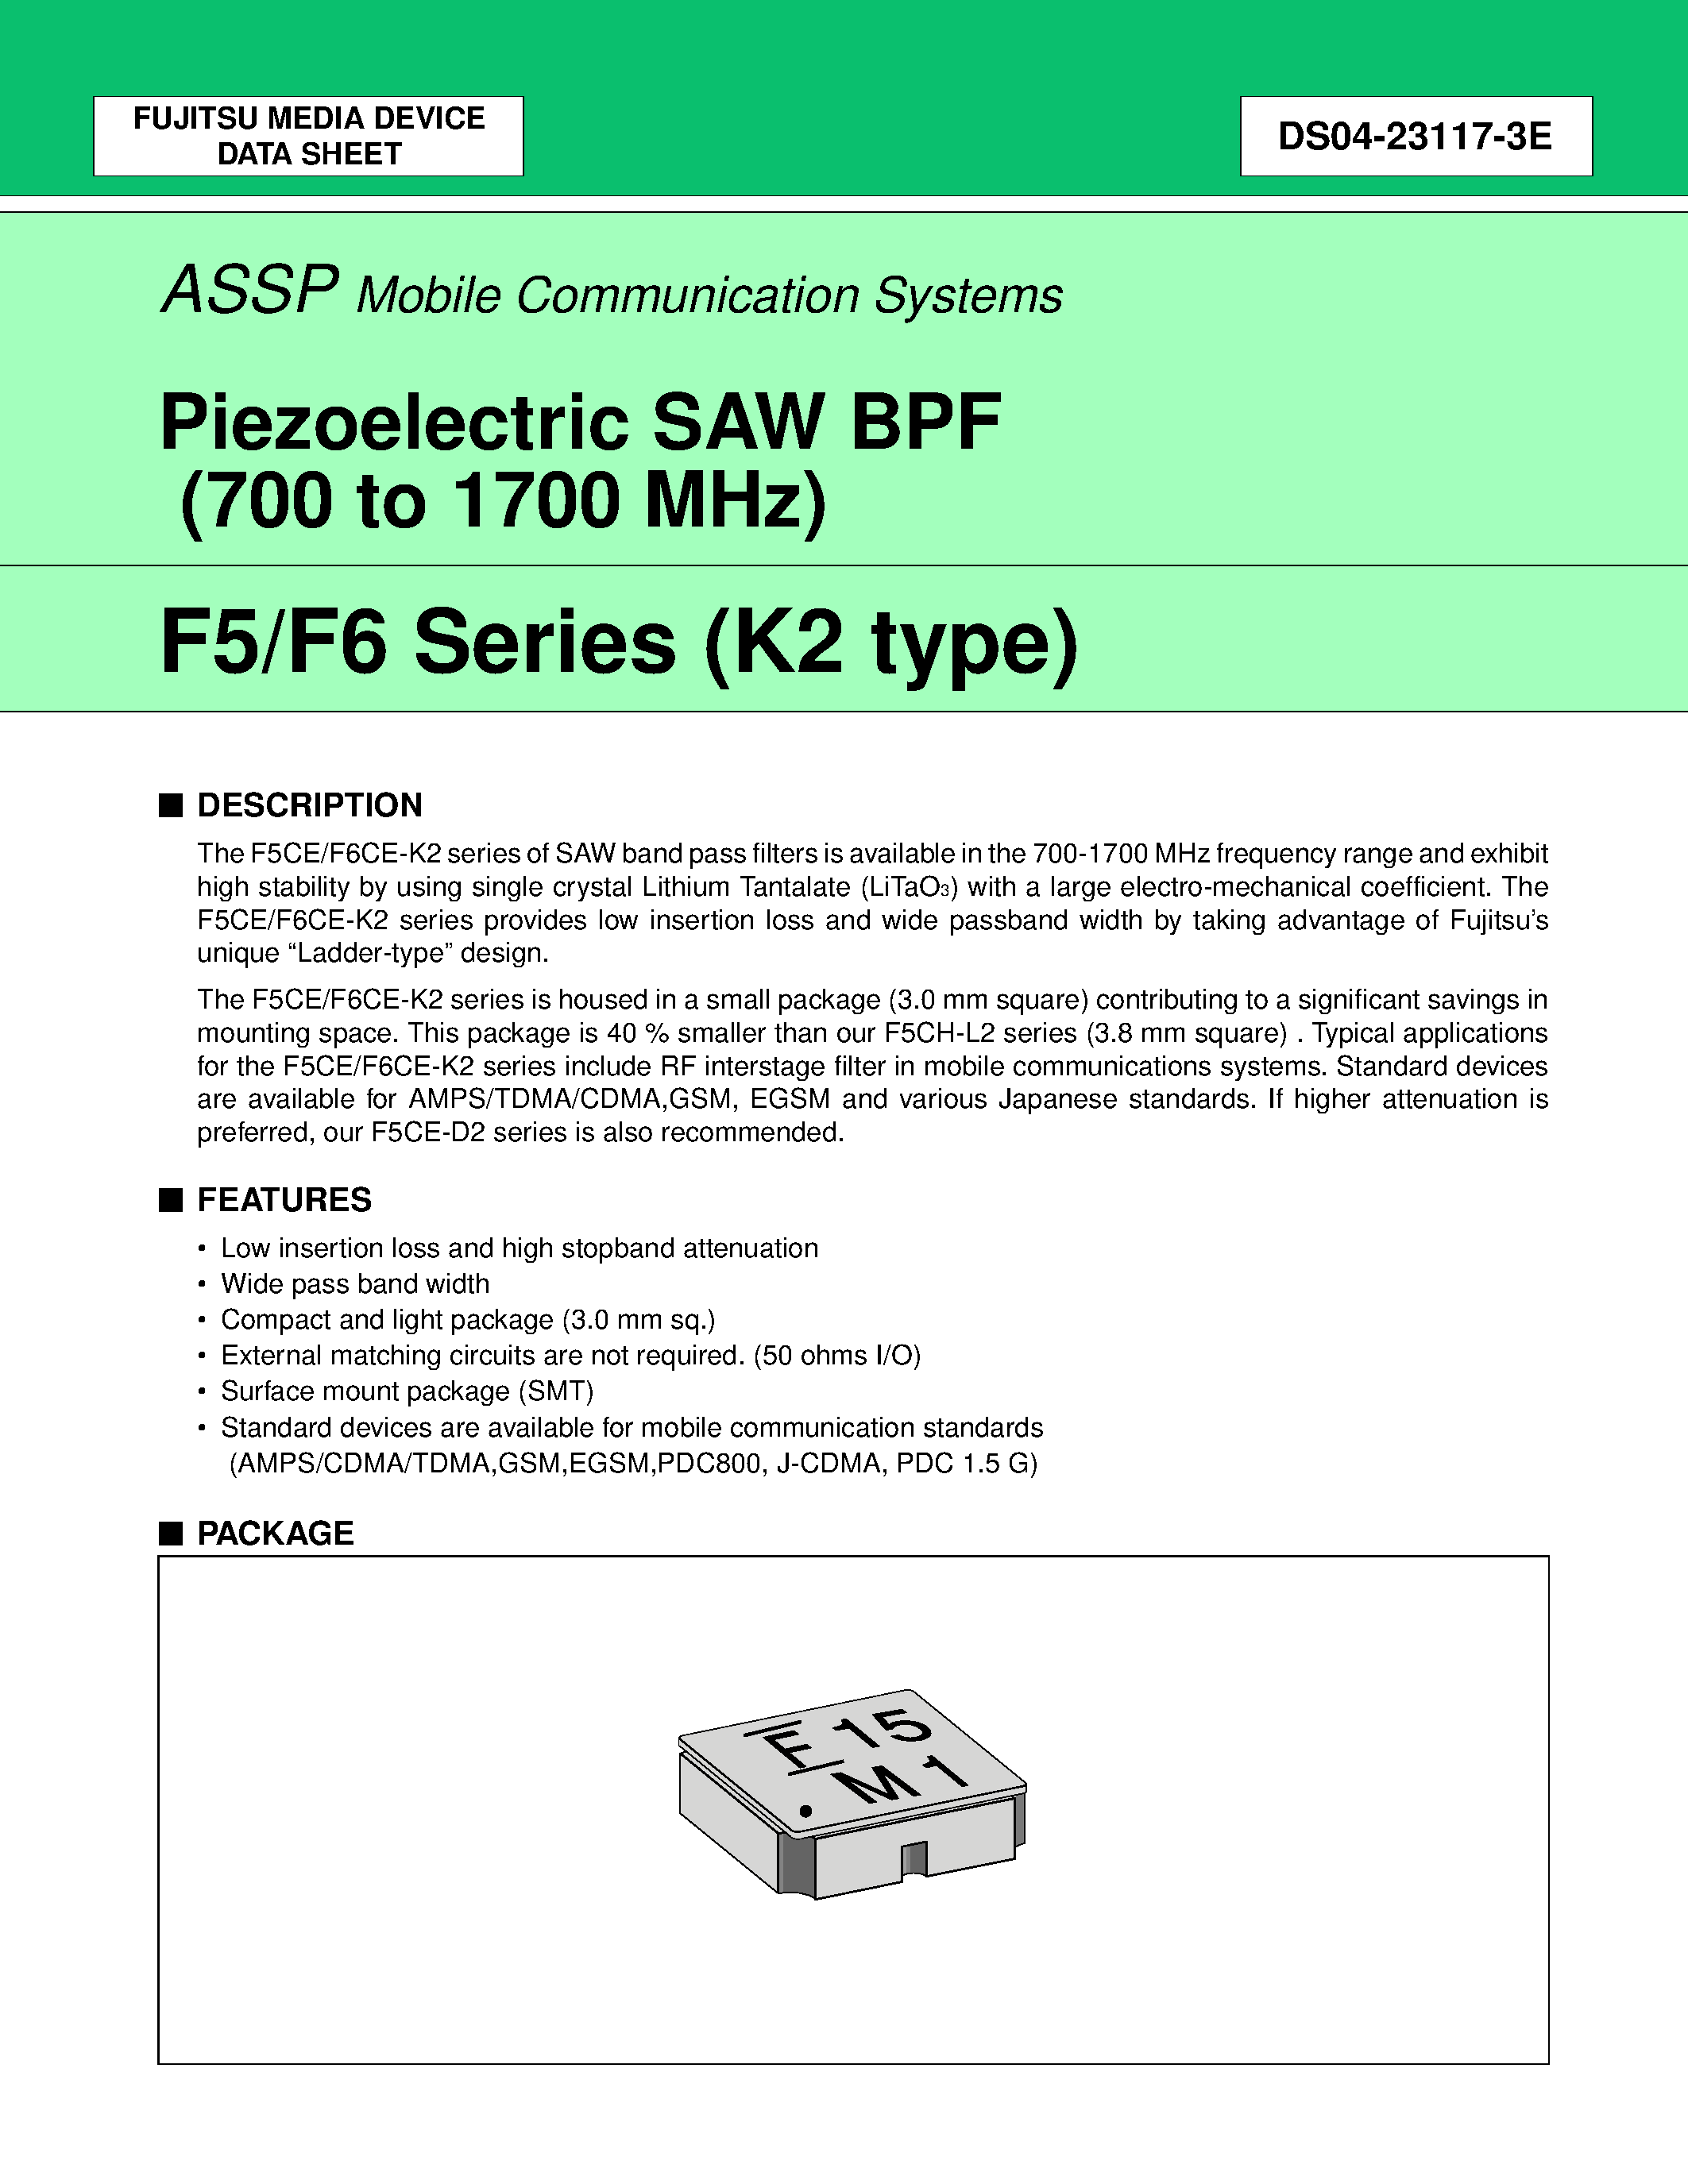 Даташит FAR-F6CE-1G8800-L2XZ-U - Piezoelectric SAW BPF (700 to 1700 MHz) страница 1